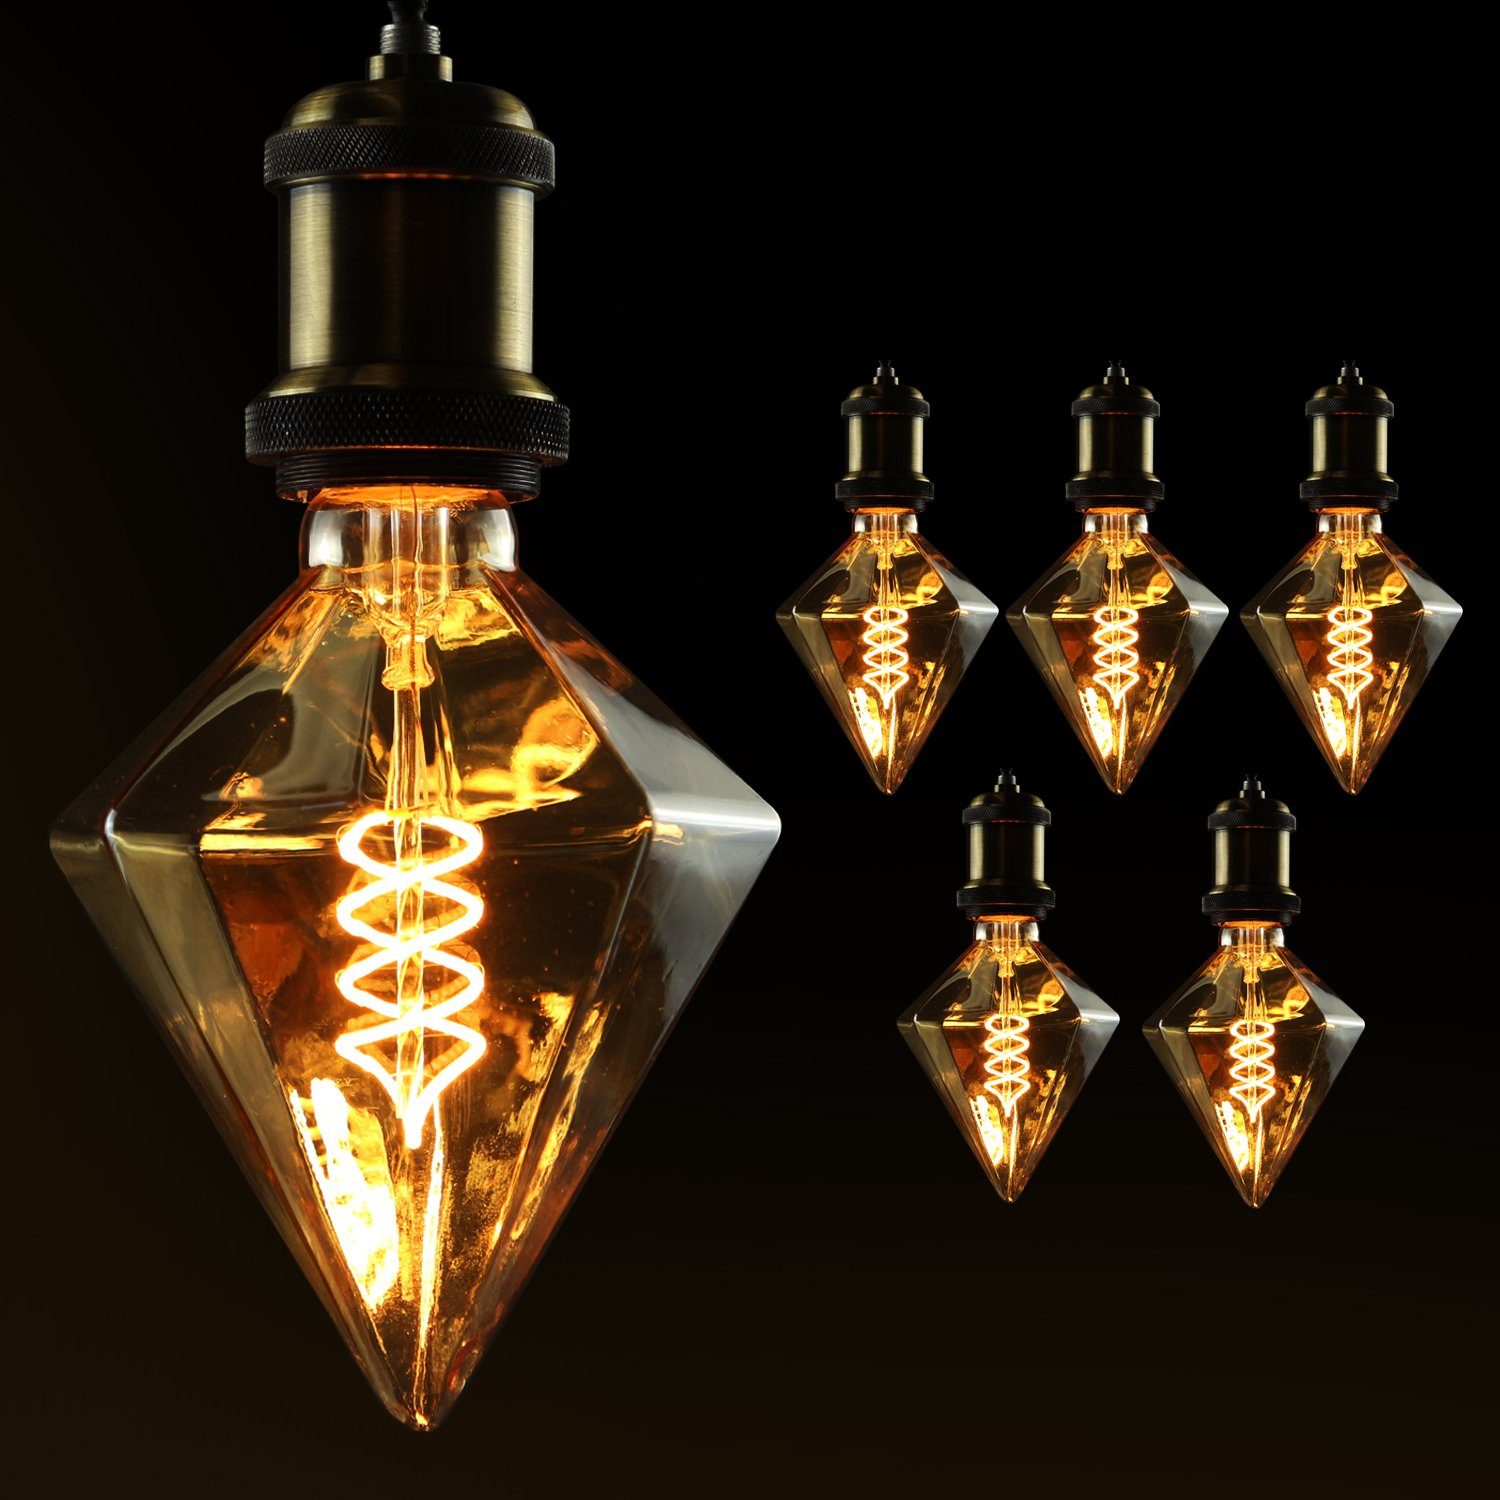 ZMH LED-Leuchtmittel LED Glühbirne E27 4W Vintage Deko Kreative Rative Warmweiß 2200K, E27, 6 St., Warmweiß, Filament Leuchtmittel Rautenförmige Beleuchtung für Weihnachten Diamanta-gold-C